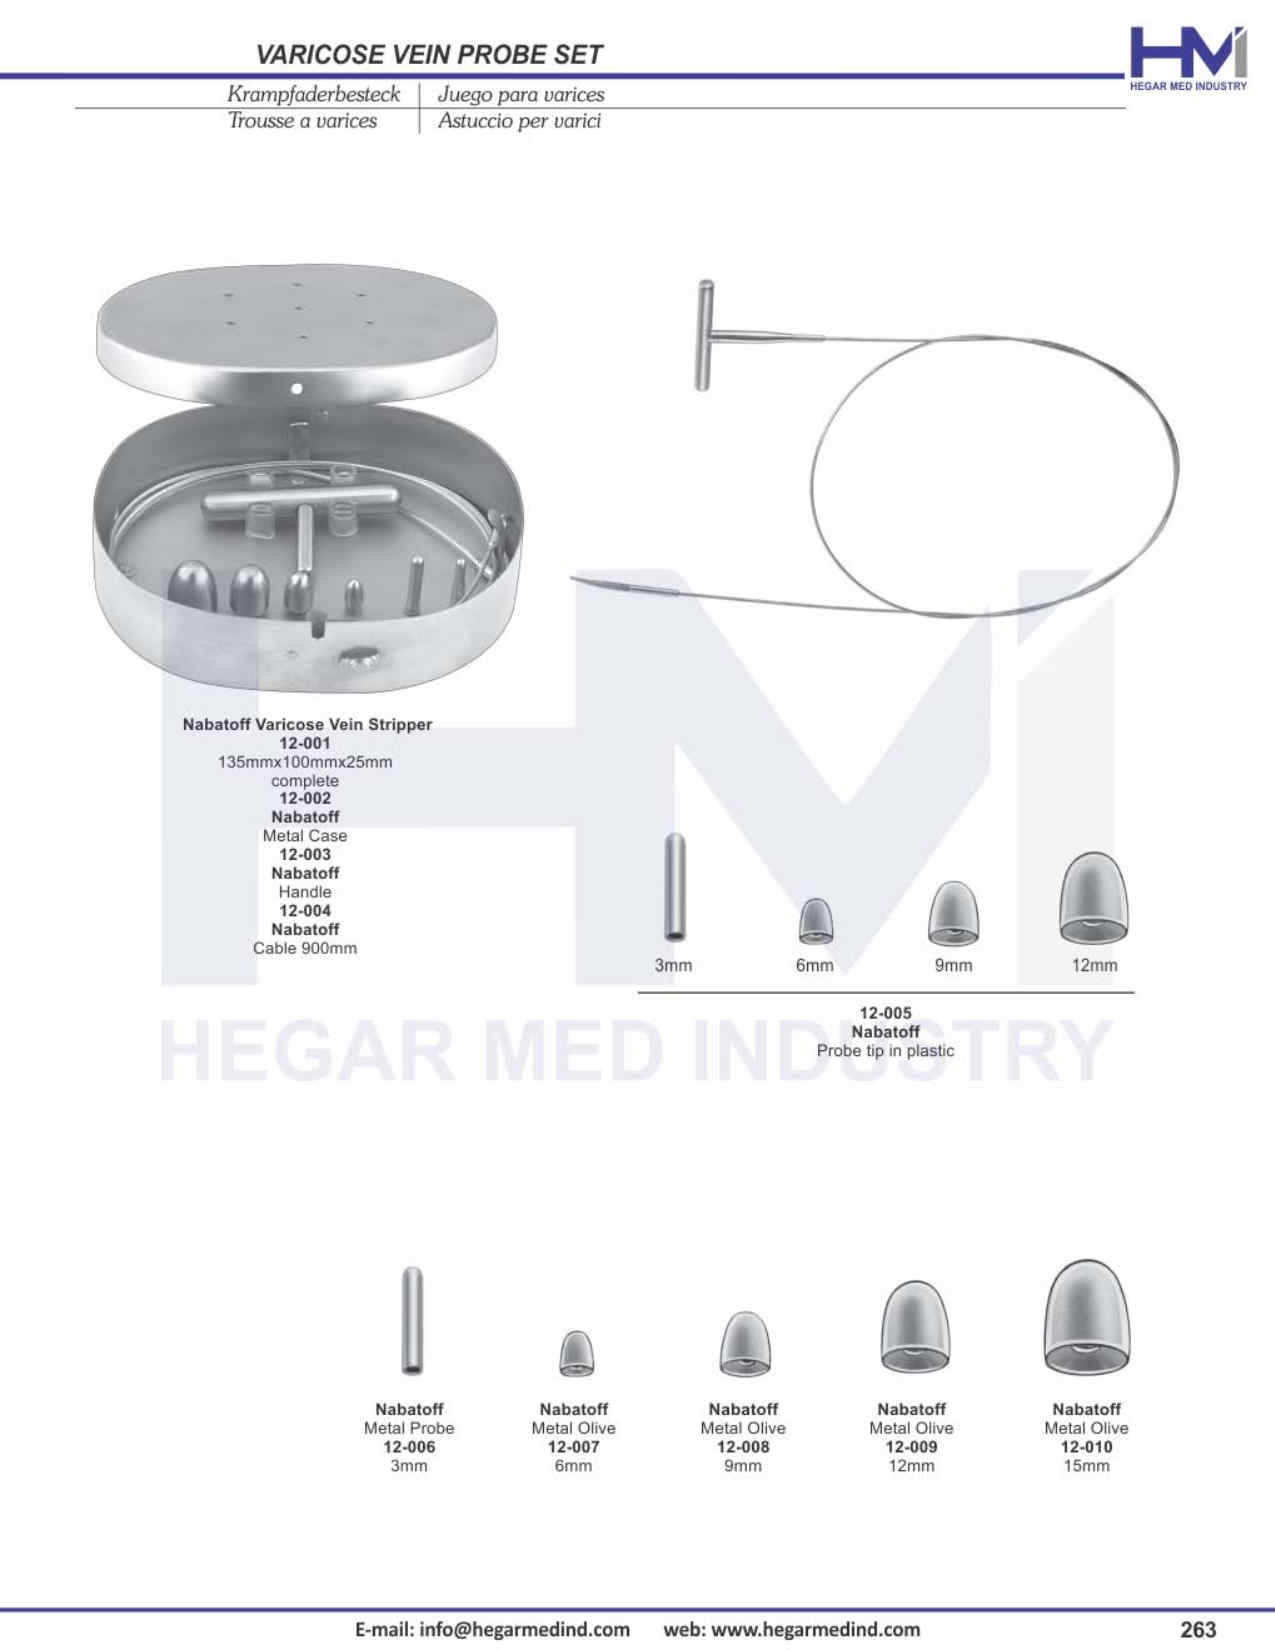 Hegar Med Industry